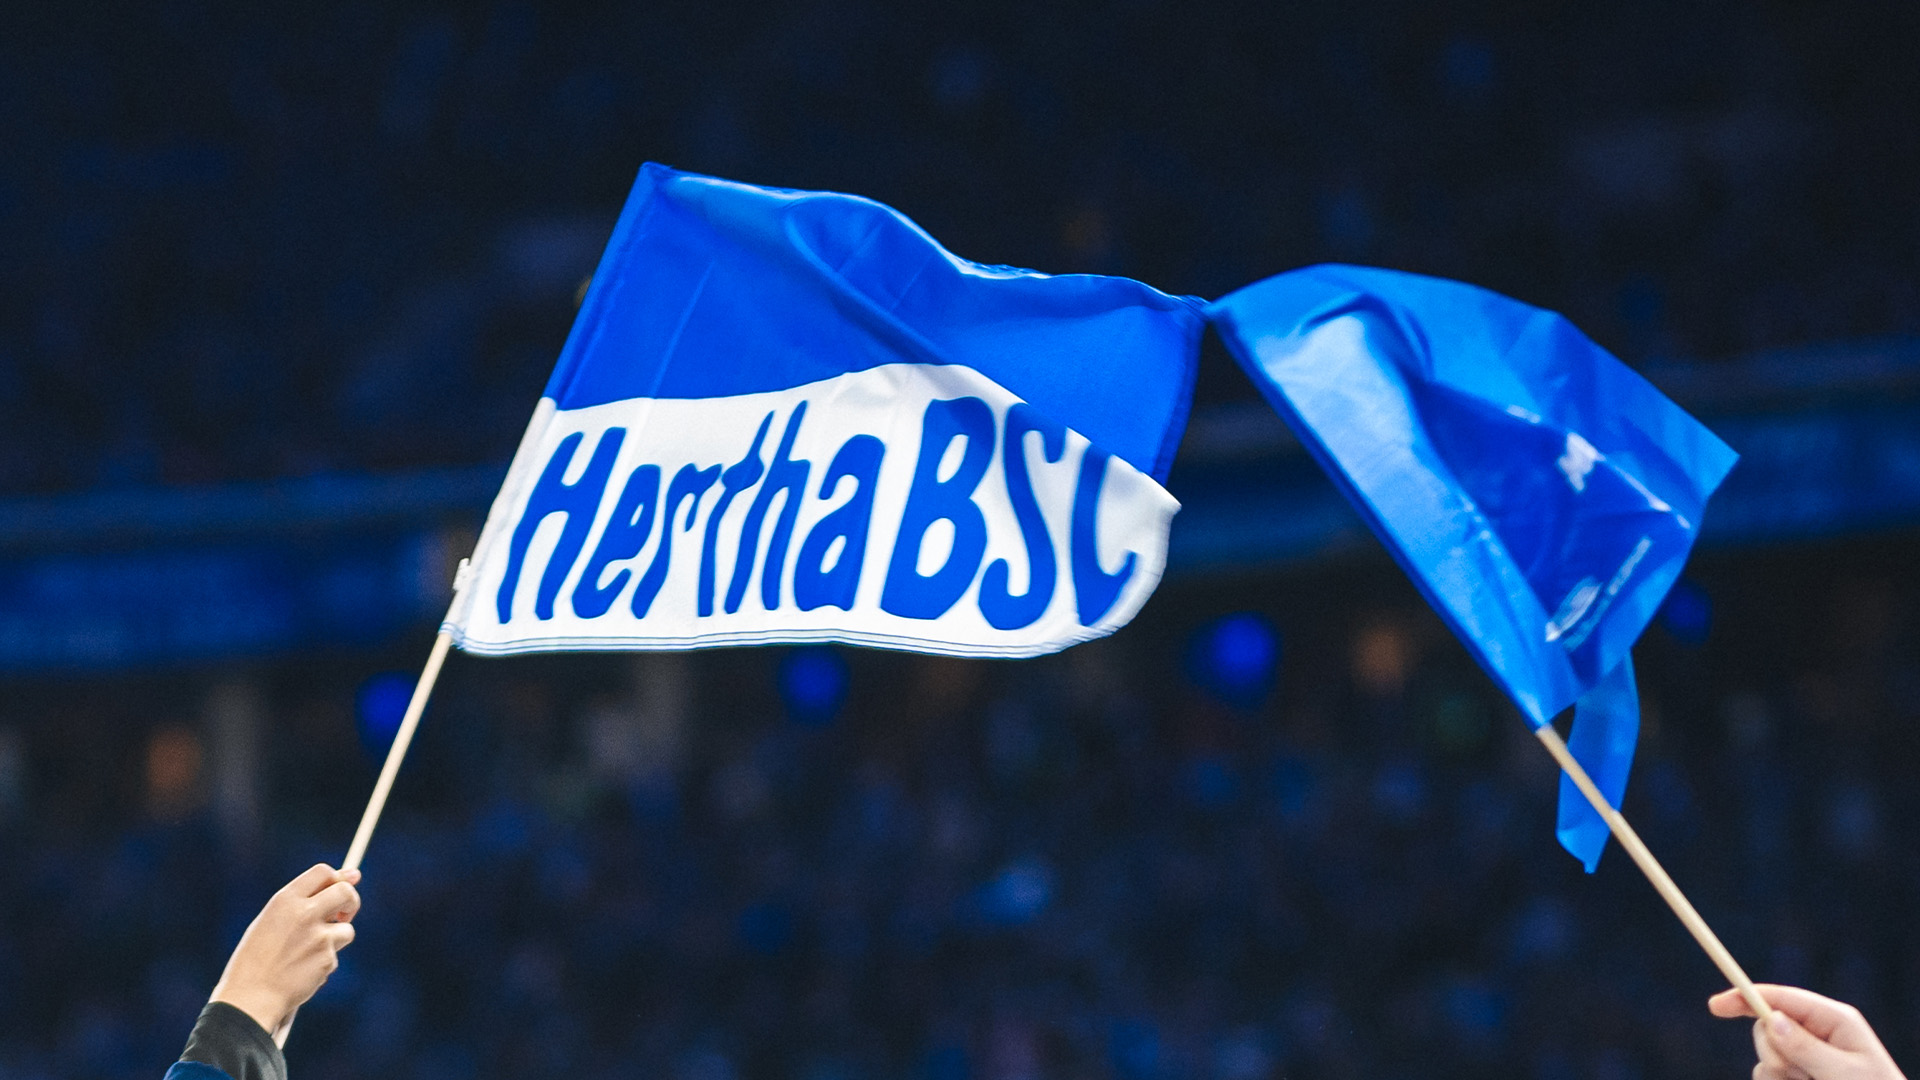 Mitgliedschaft Hertha BSC